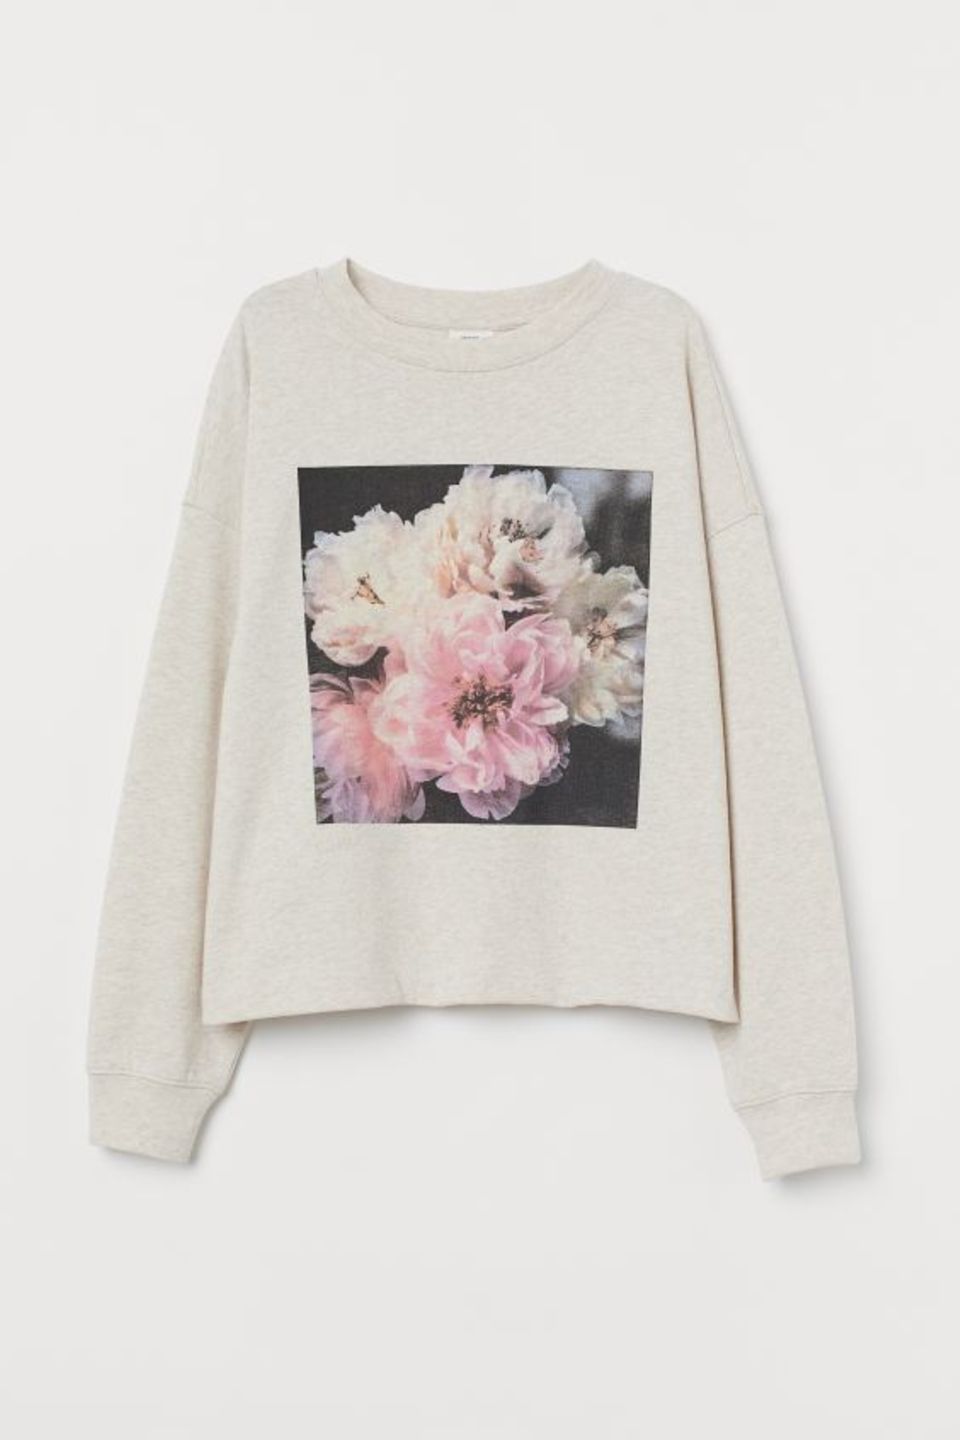 Cremefarbenes Sweatshirt mit Blumen-Print. Von H&M, um 20 Euro.